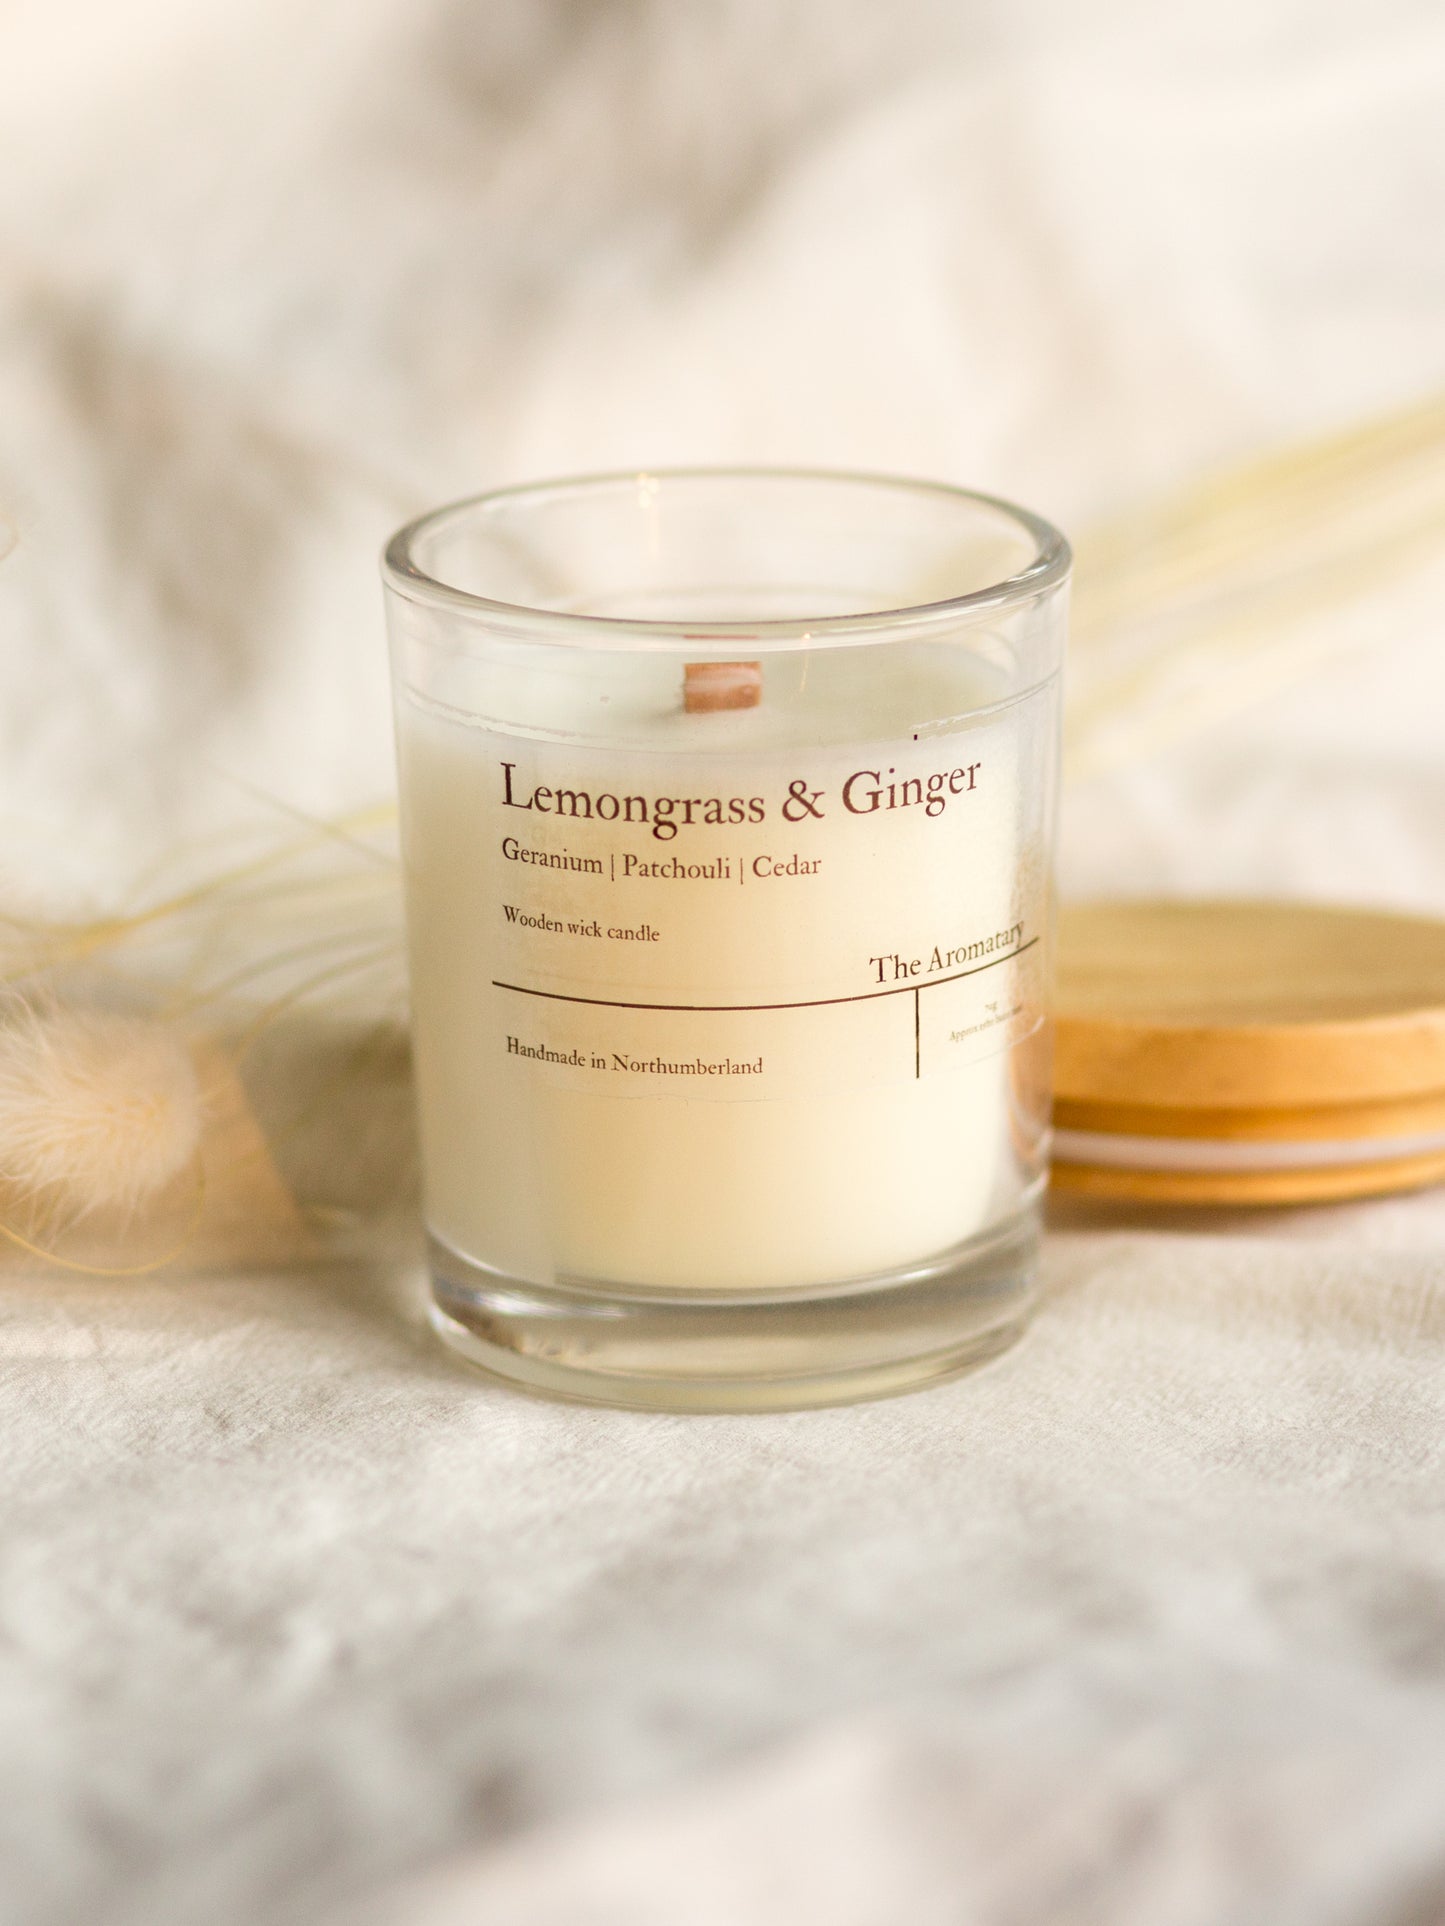 Lemongrass & Ginger wooden wick votive